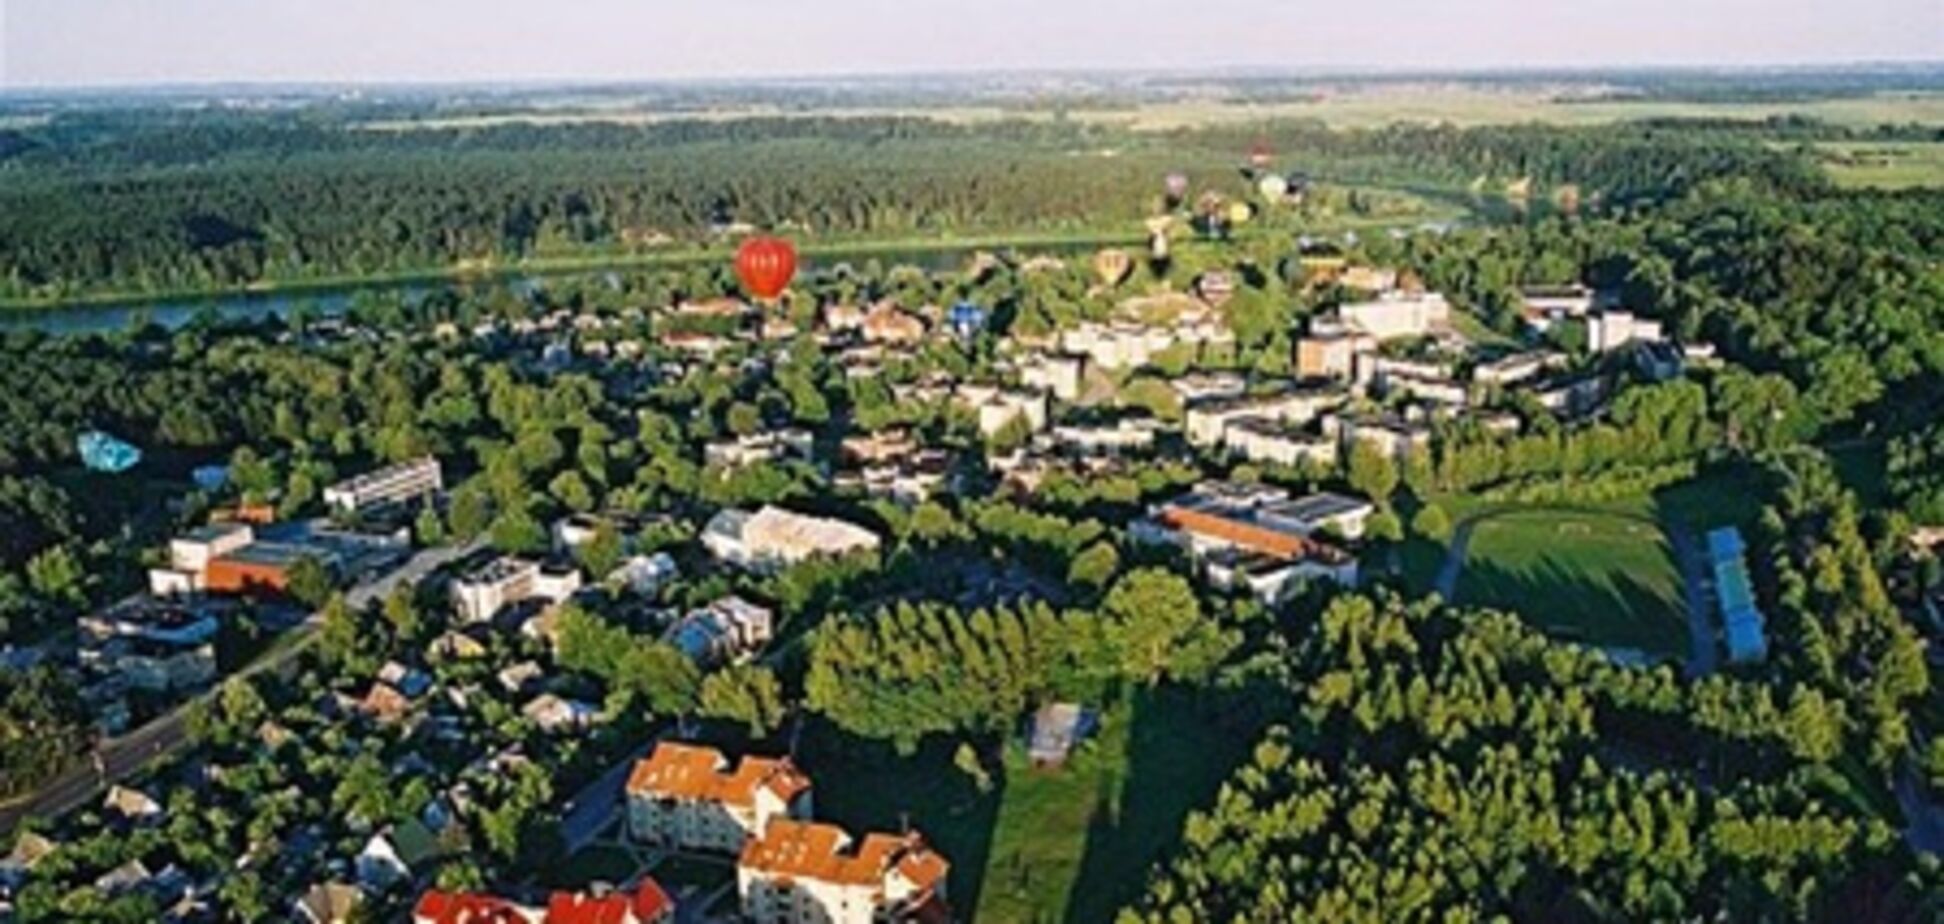 Отдых на литовском курорте Бирштонас все популярнее